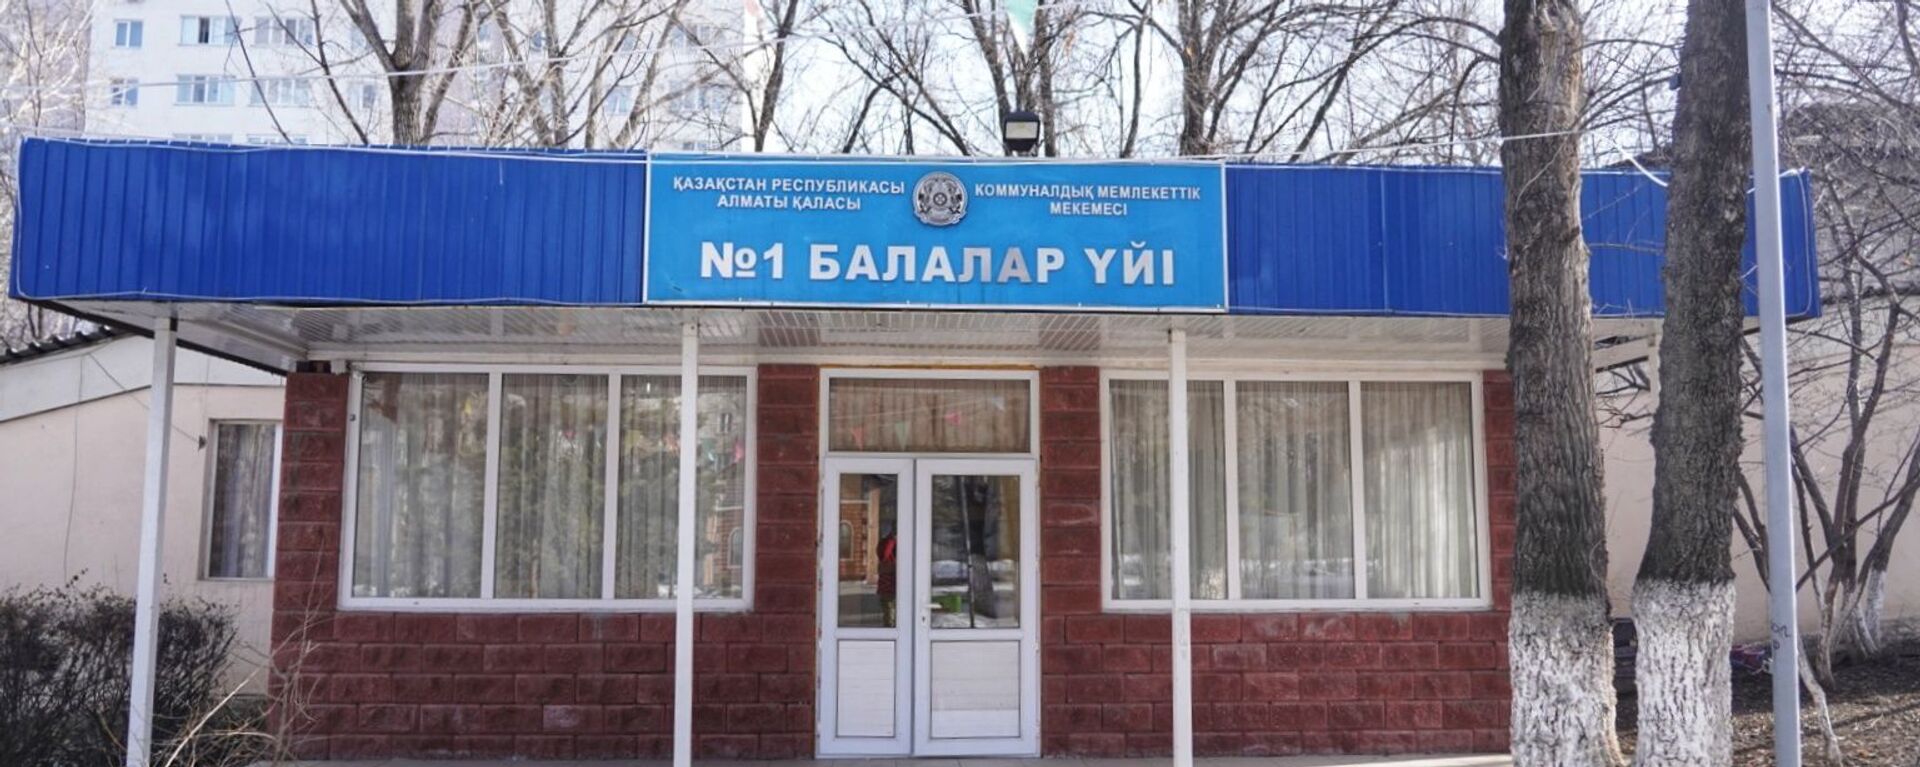 В Алматы закроют детский дом №1 - Sputnik Казахстан, 1920, 29.07.2021